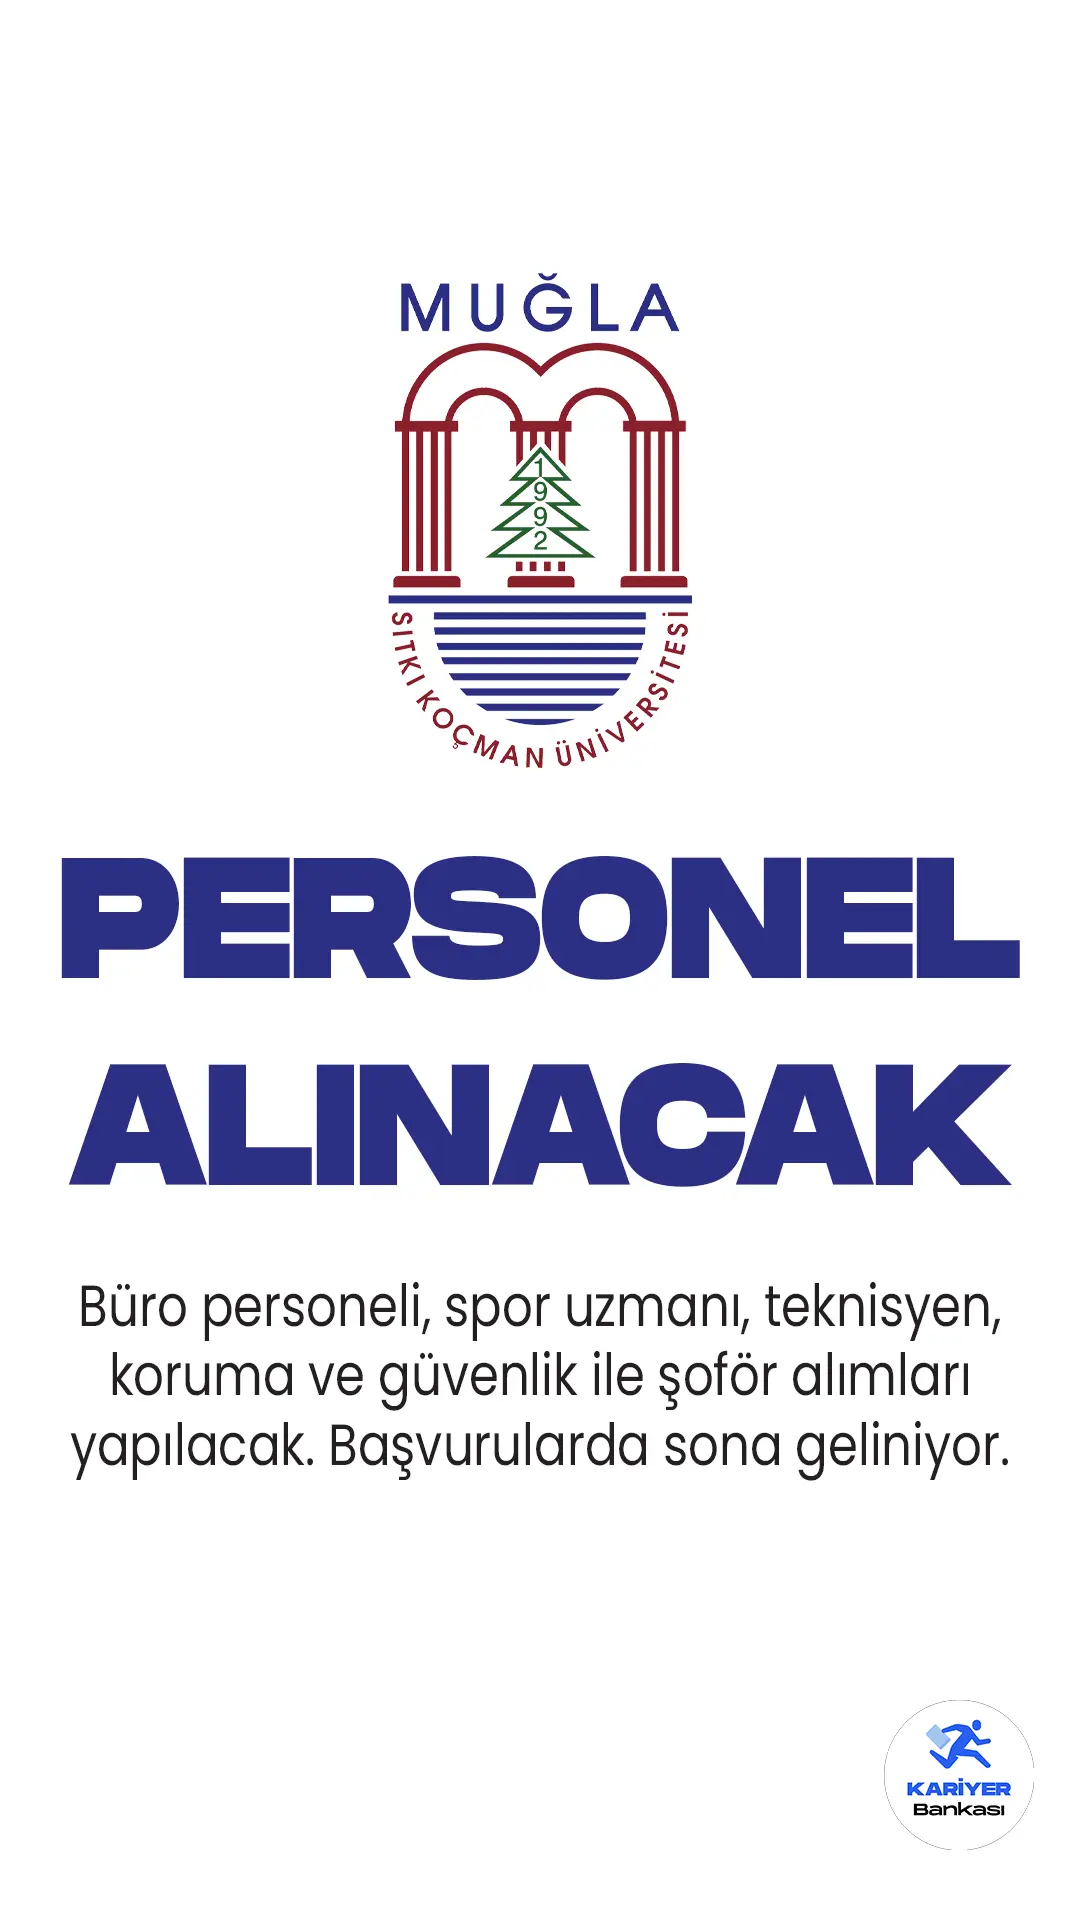 Muğla Sıtkı Koçman Üniversitesi personel alımı başvuruları 14 Nisan'da sona erecek. Büro personeli, spor uzmanı, teknisyen, koruma ve güvenlik ile şoför alımları...